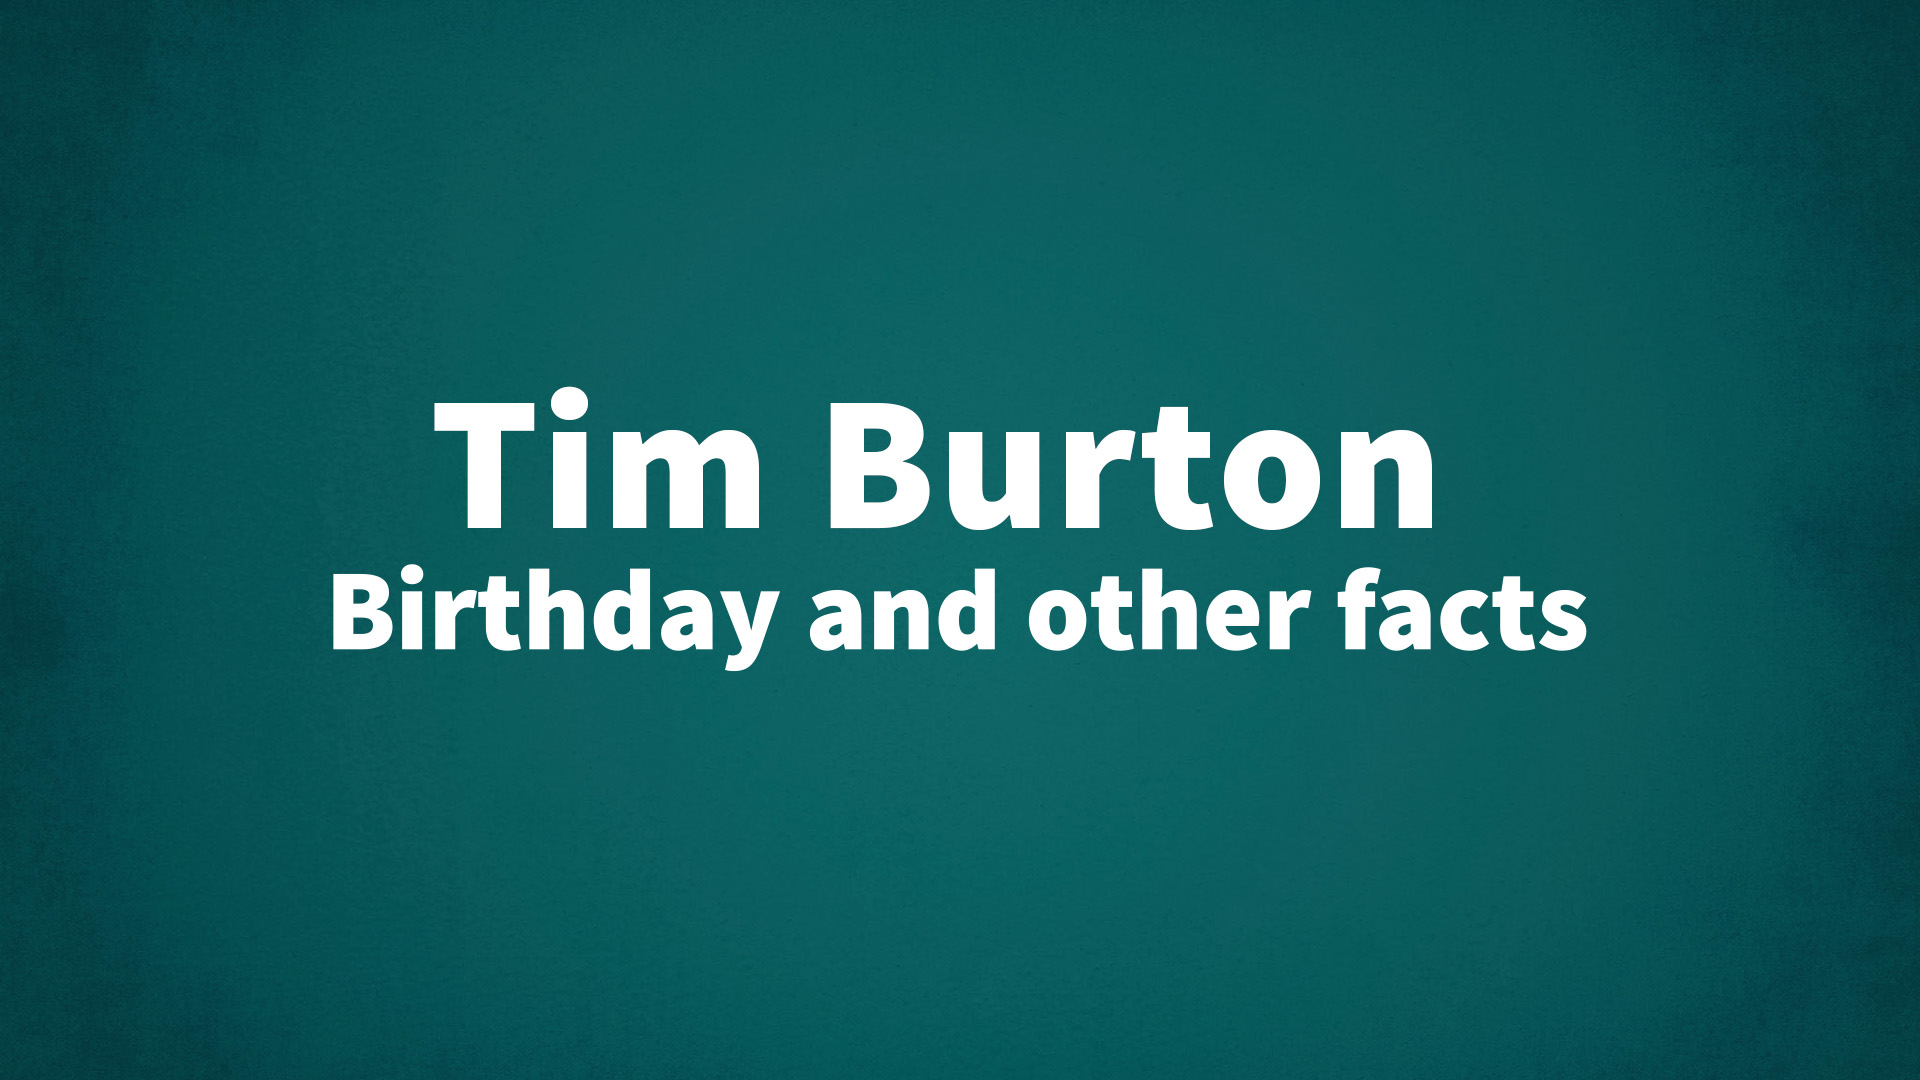 Tim Burton Birthday